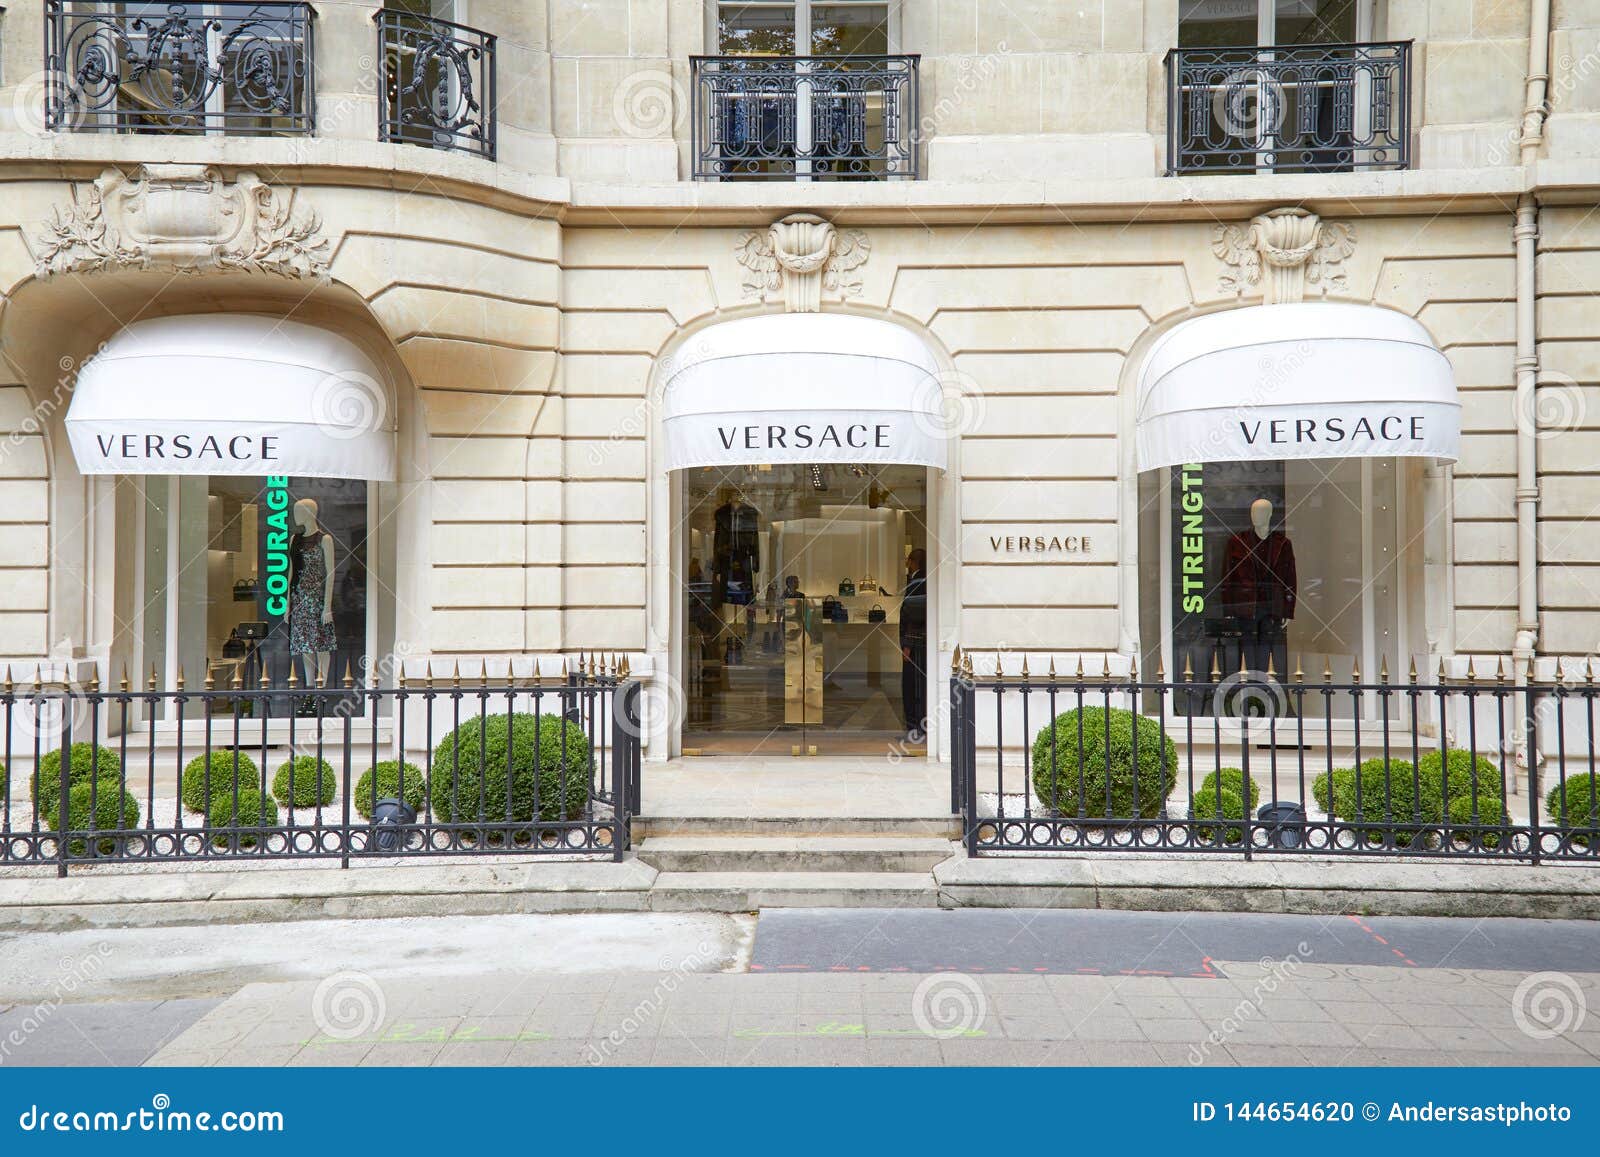 Fendi And Louis Vuitton Windows Strore In Rue Montaigne Paris